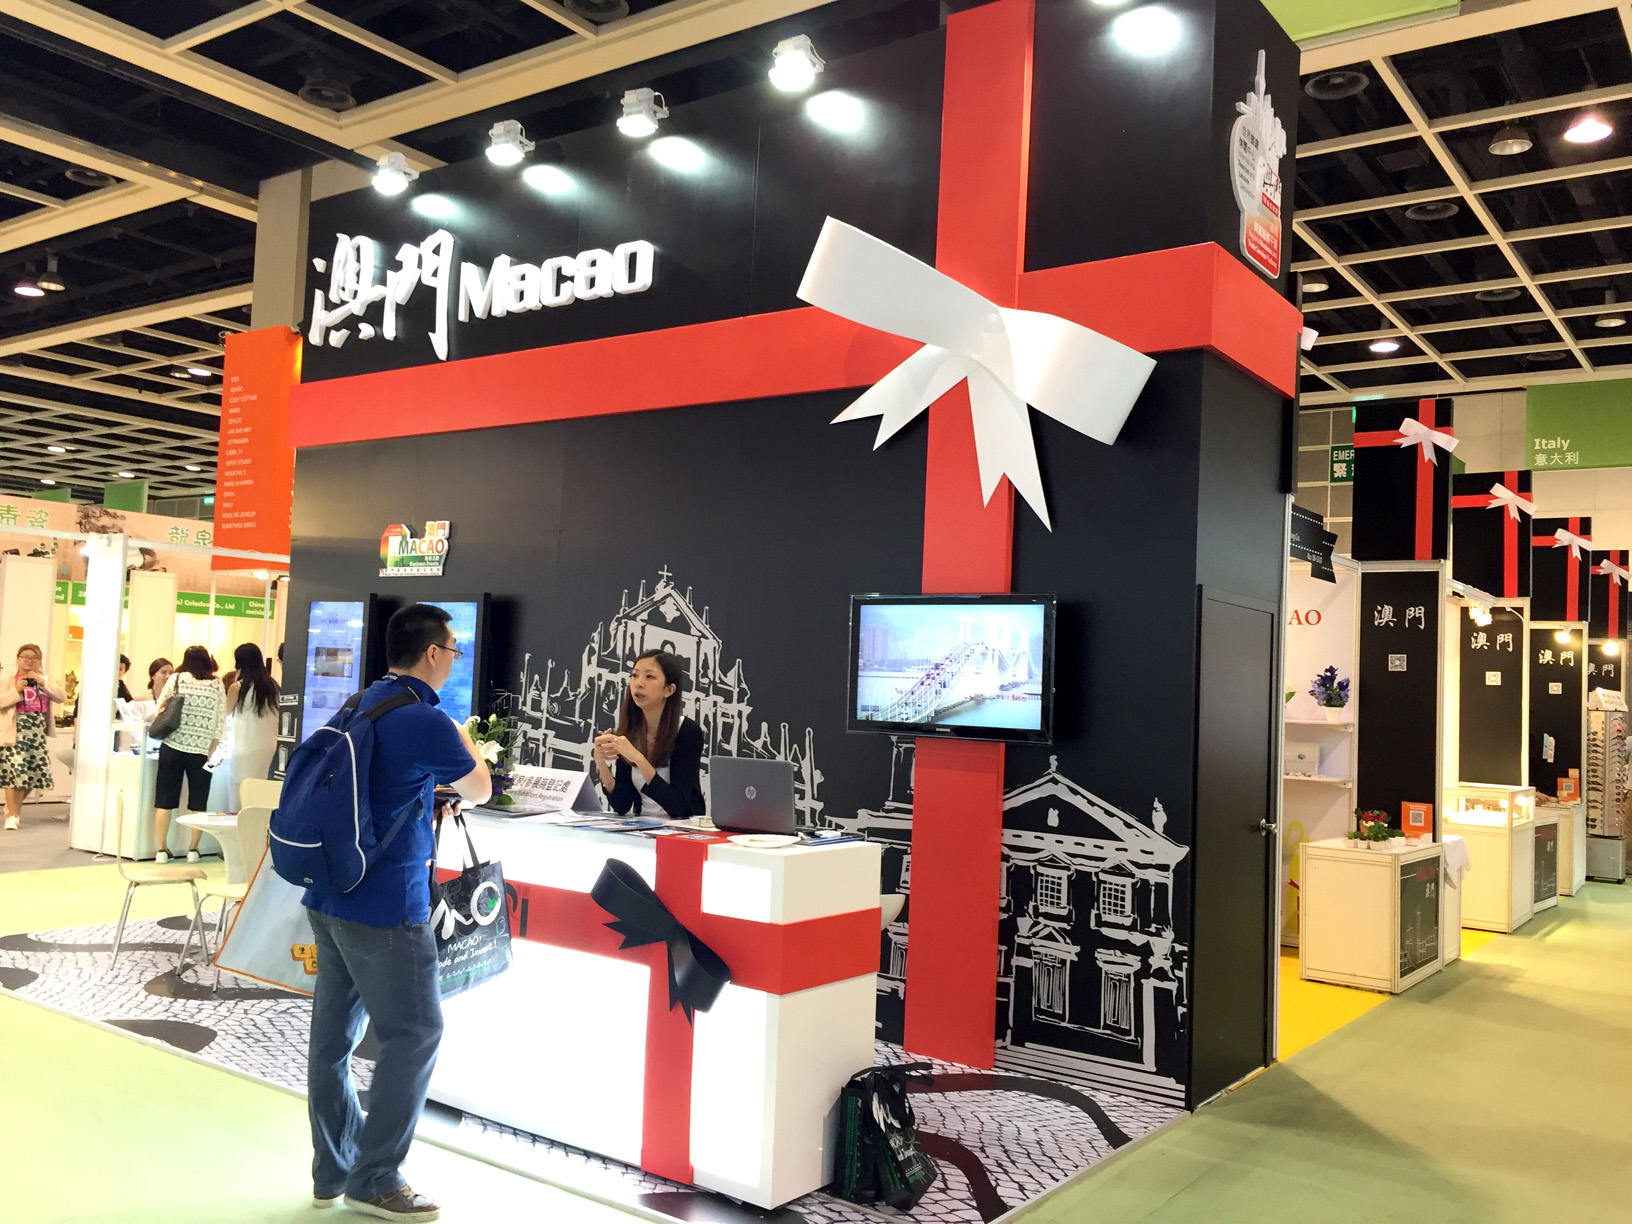 IPIM sets up a Macao Pavilion at the Hong Kong Gifts & Premium Fair (27-30 April 2016)